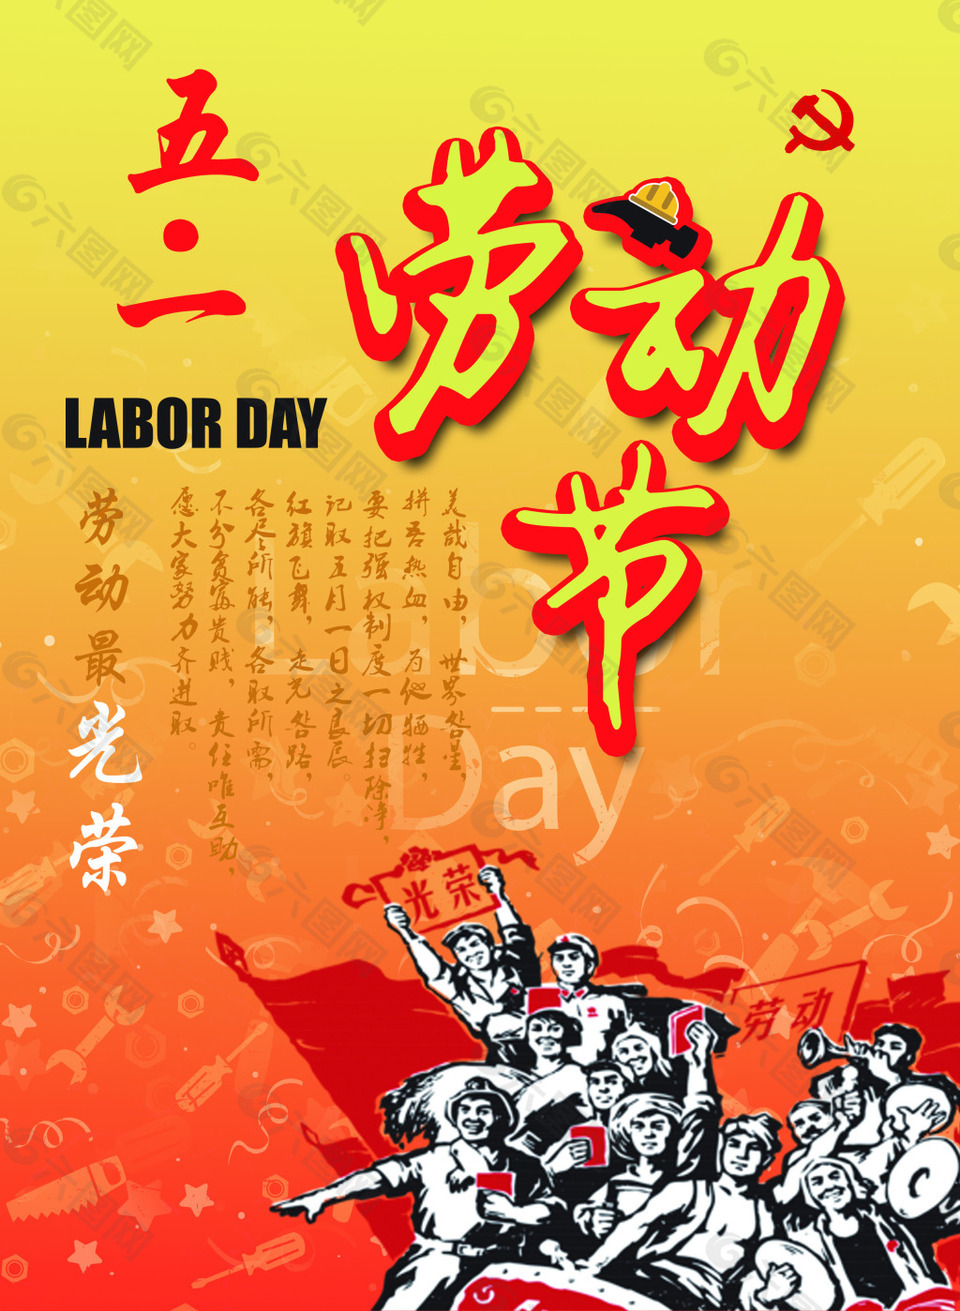 劳动节宣传海报设计素材